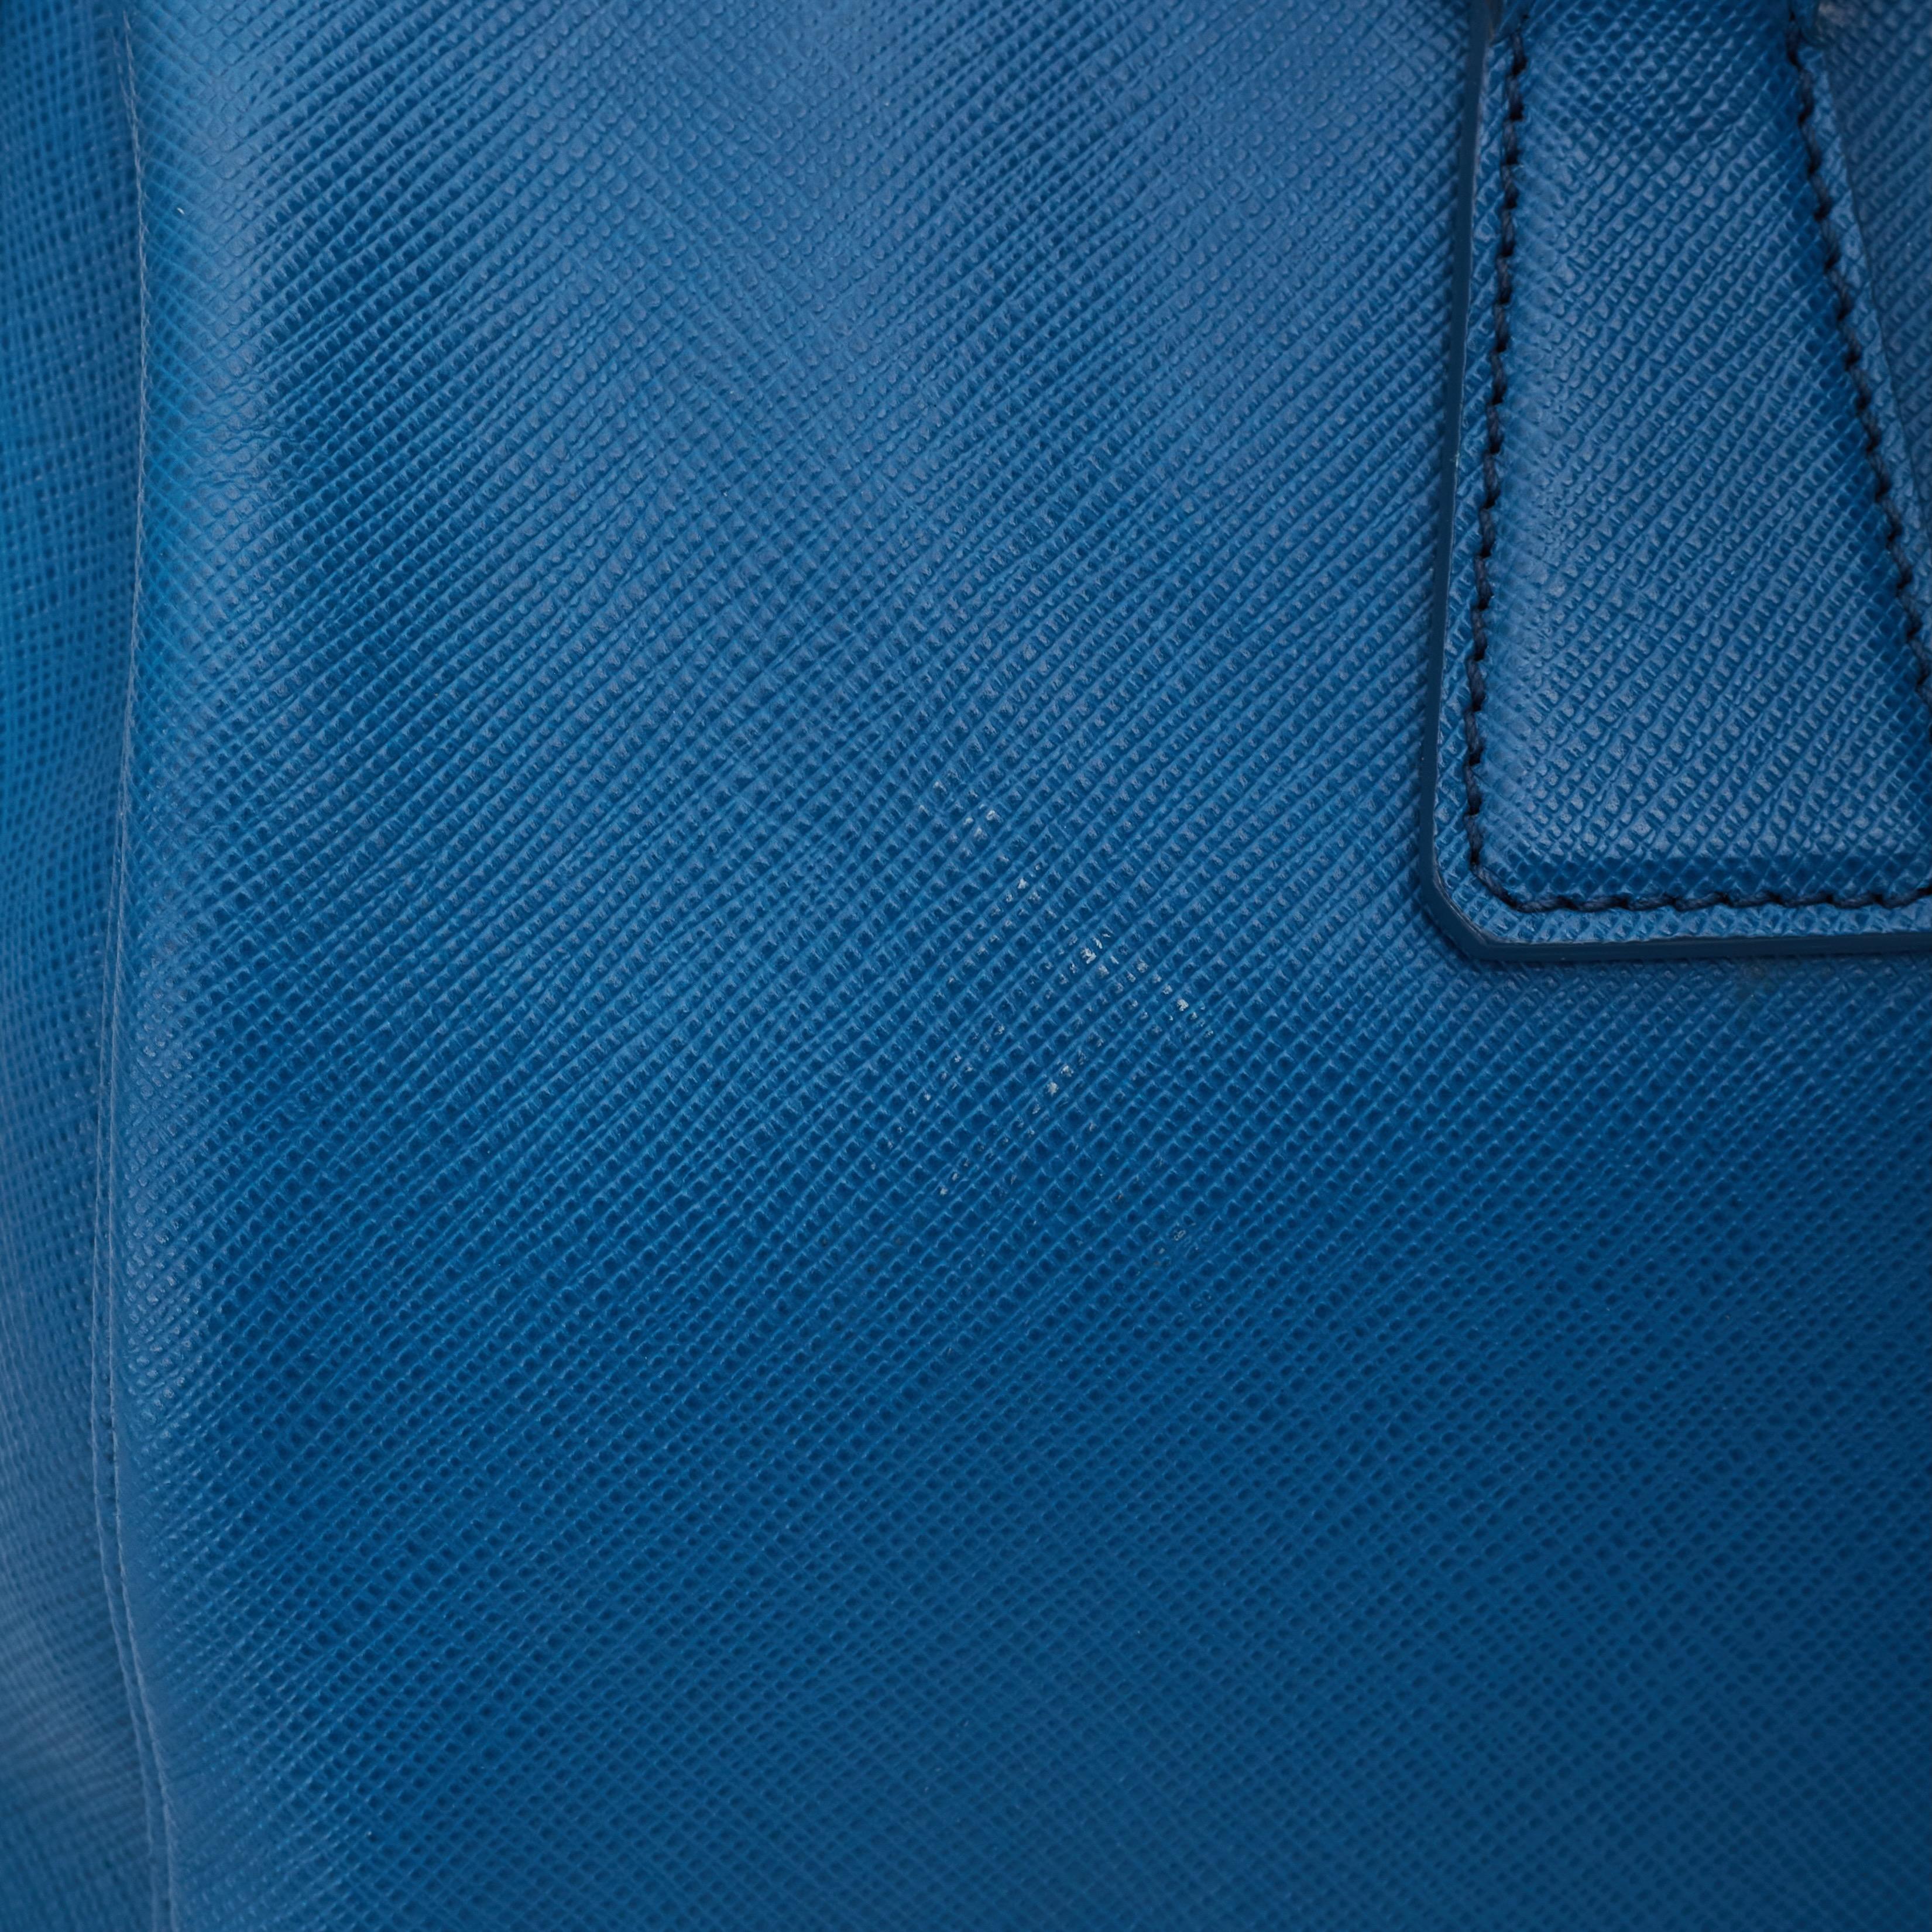 Prada Saffiano Leather Blue Bauletto Boston Bag Round For Sale 5